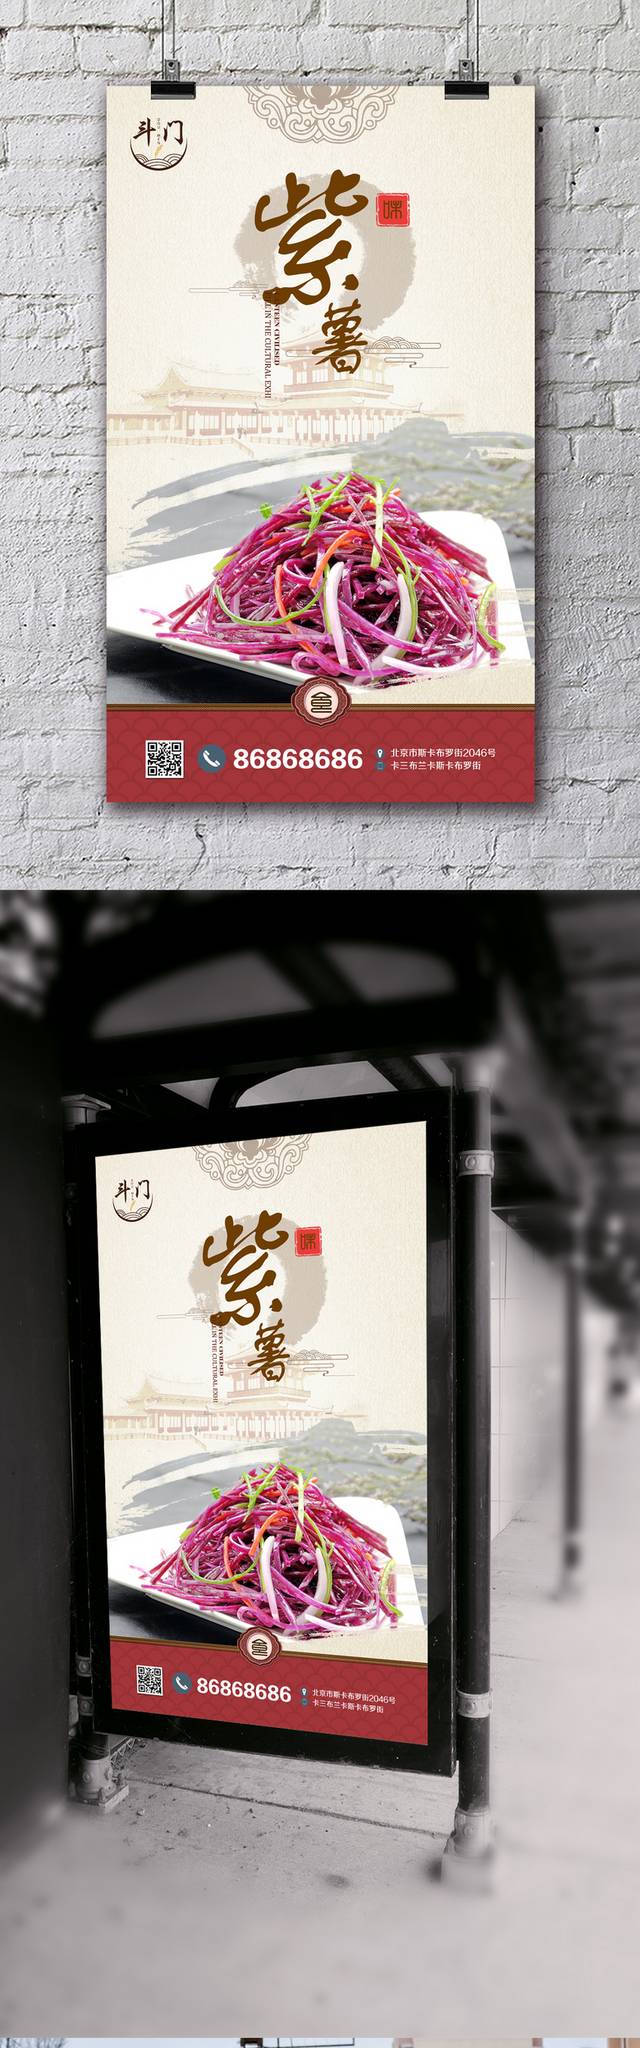 中国风紫薯宣传海报设计